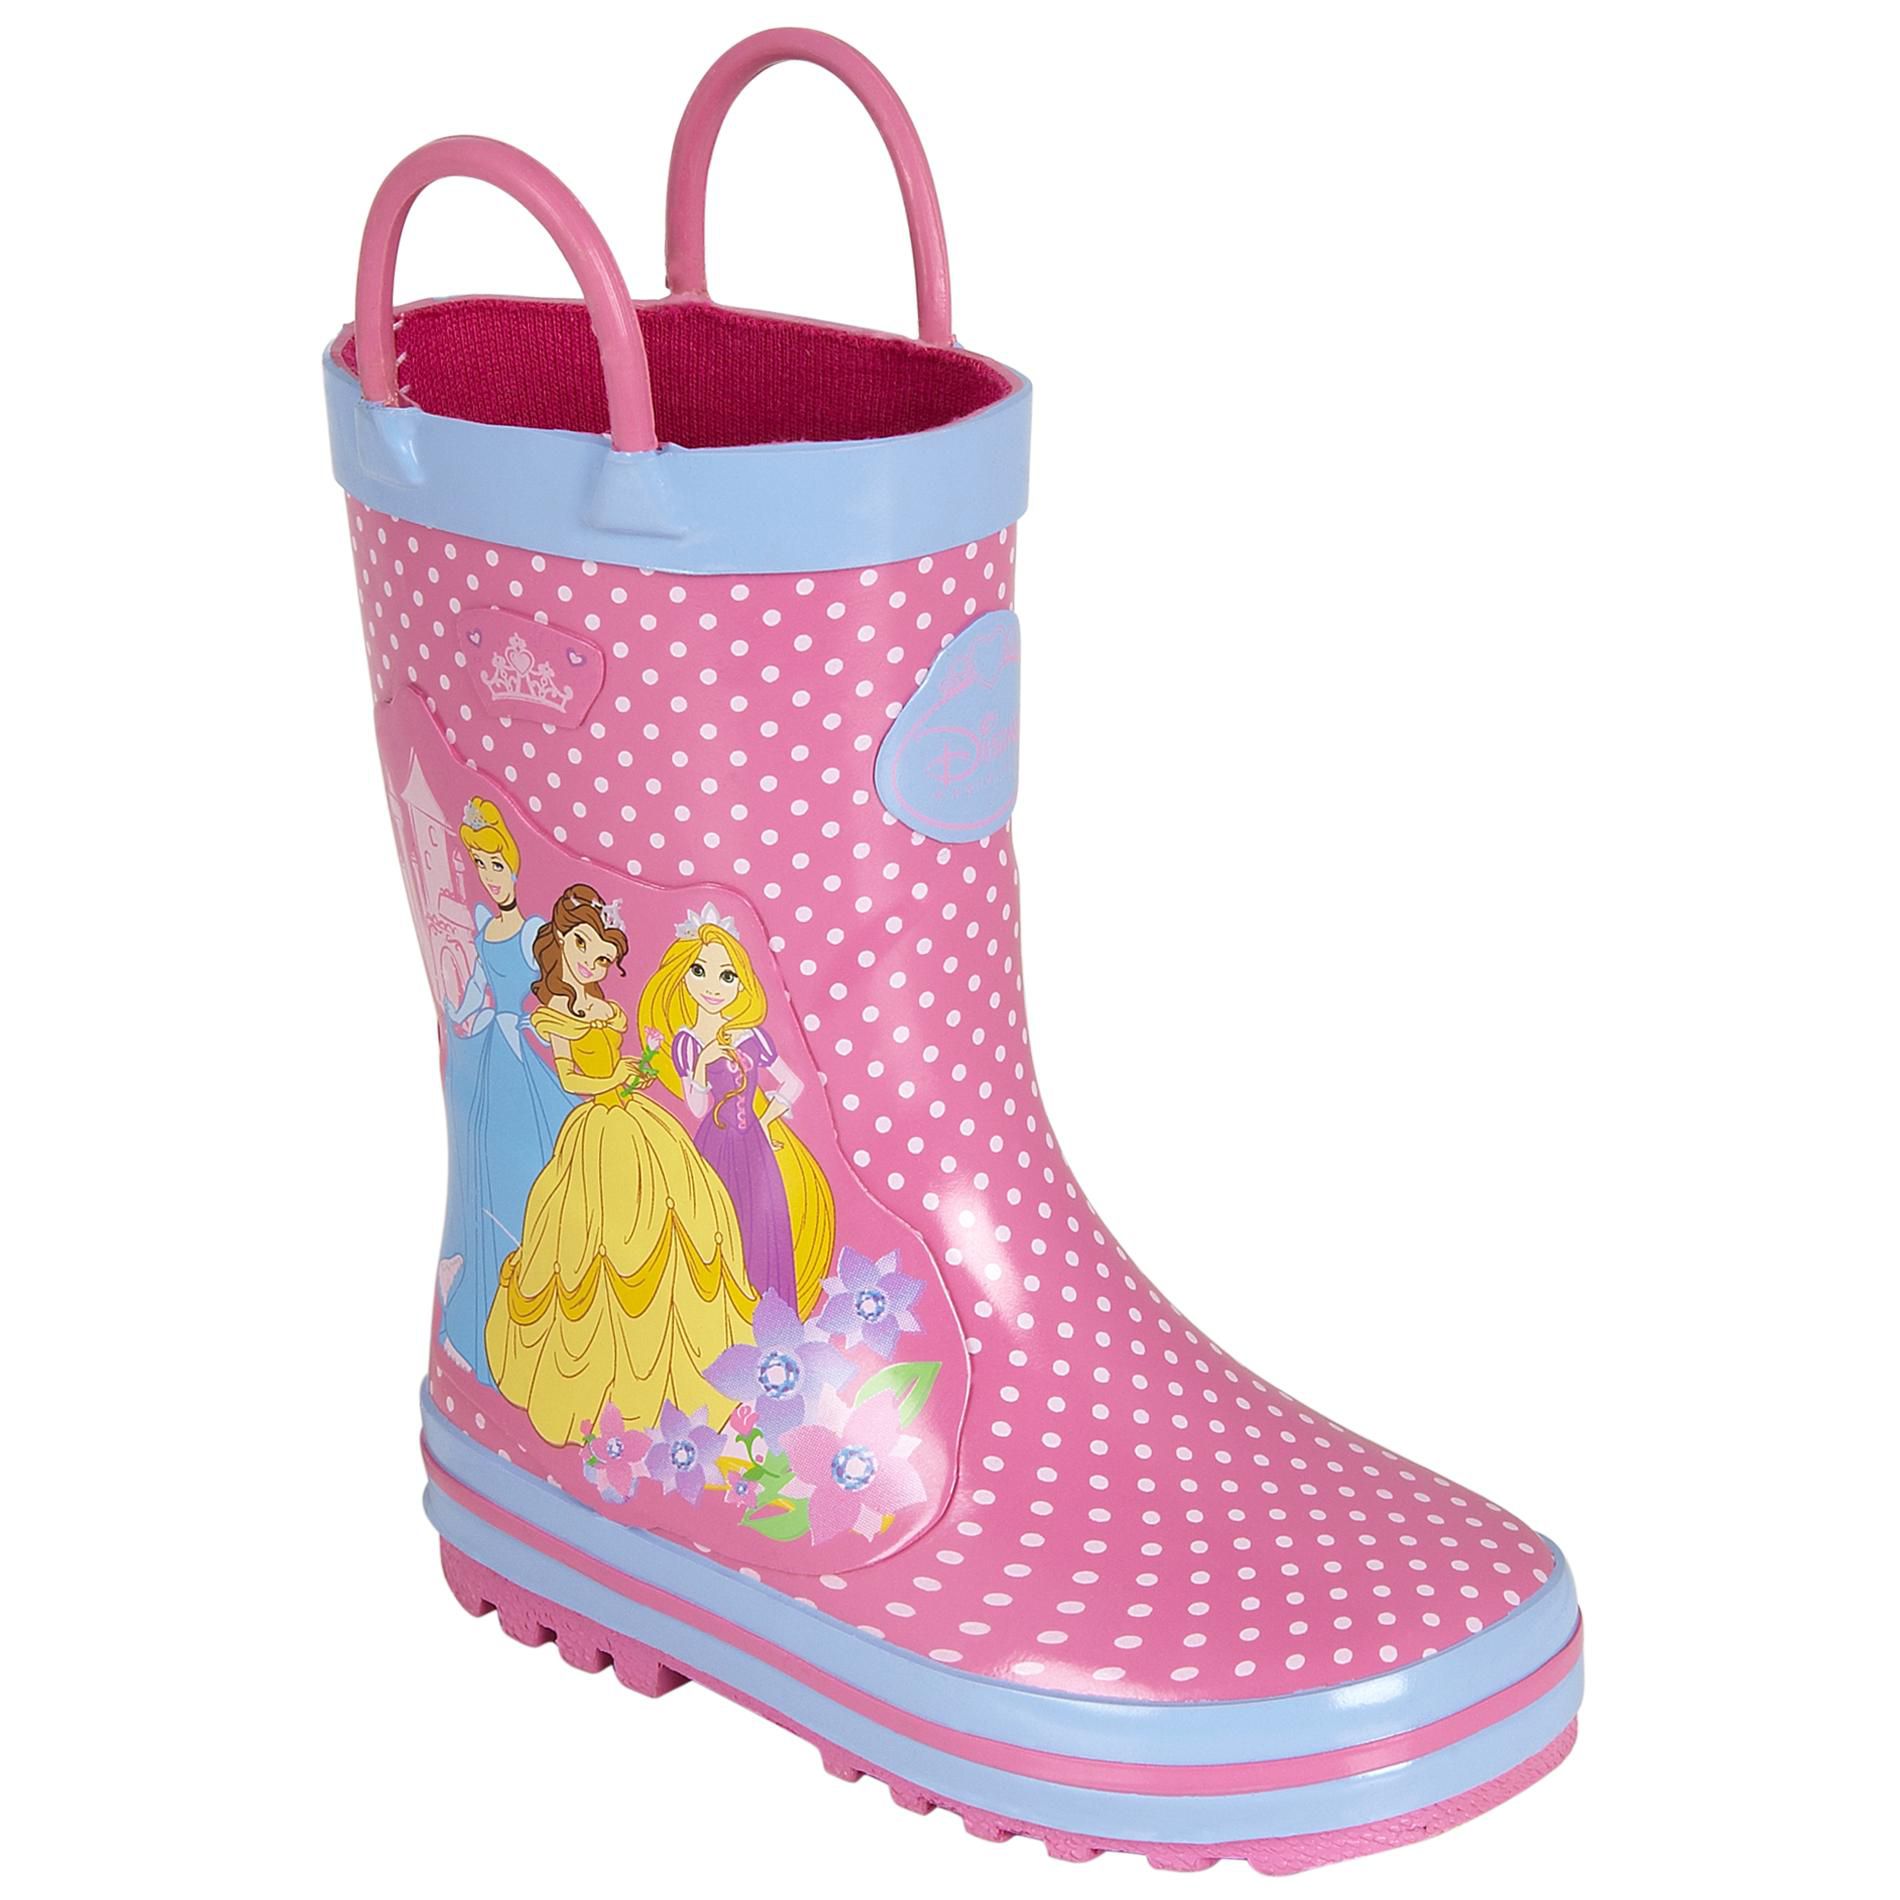 Disney Toddler Girl's Princess Rain Boot - Pink